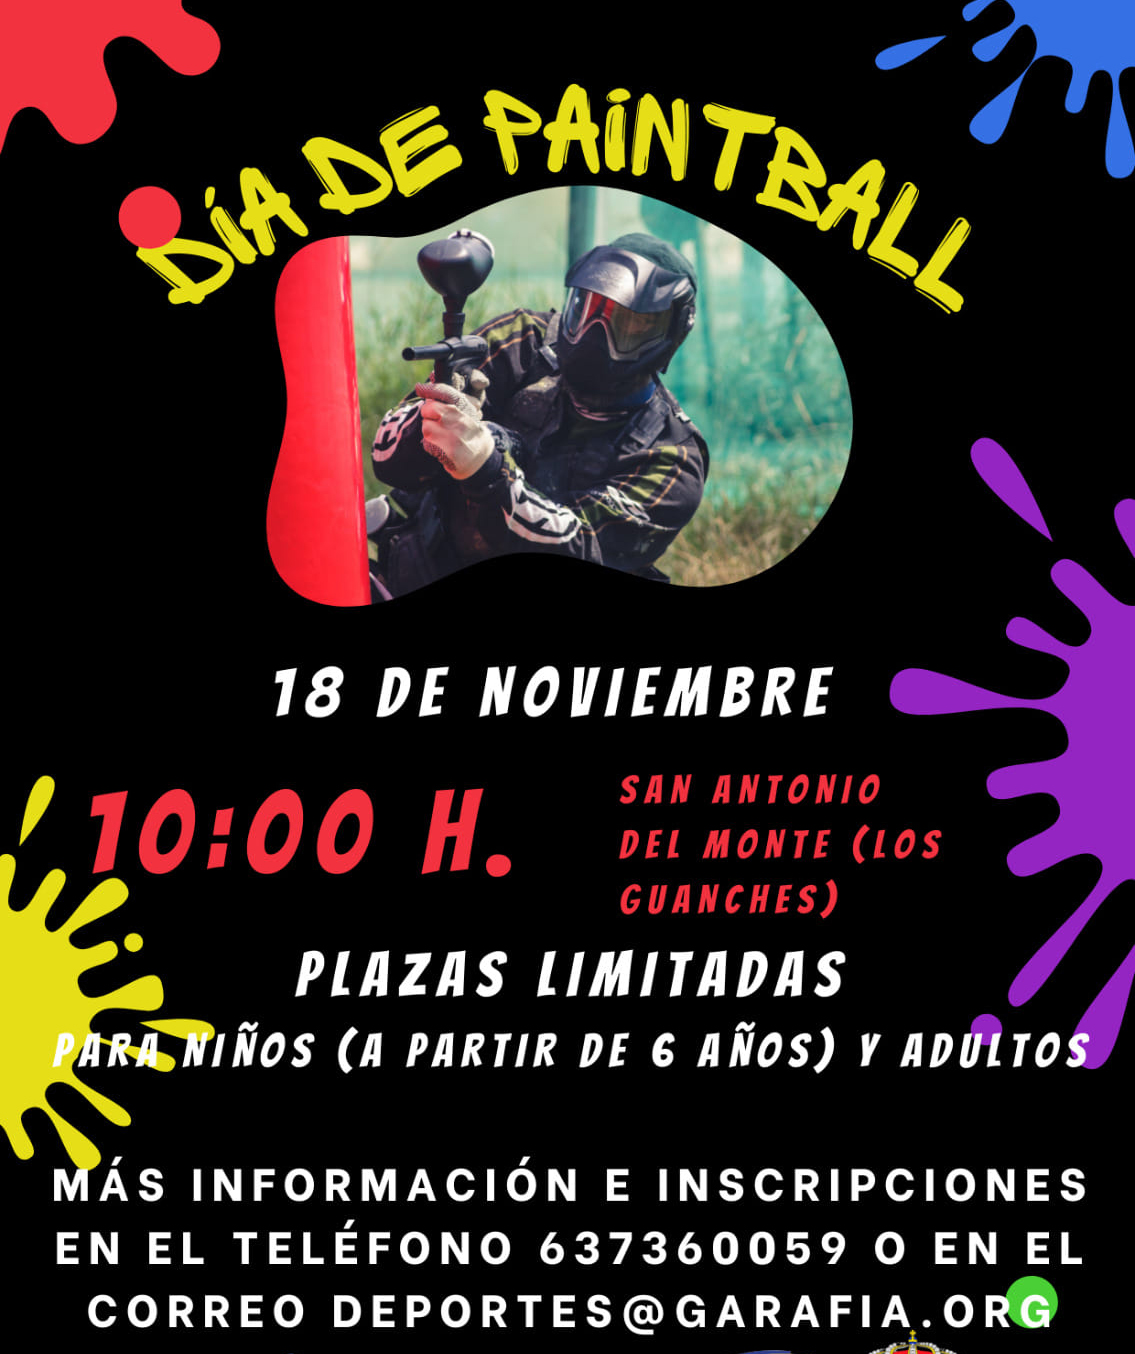 Jornada de 'paintball' en San Antonio del Monte